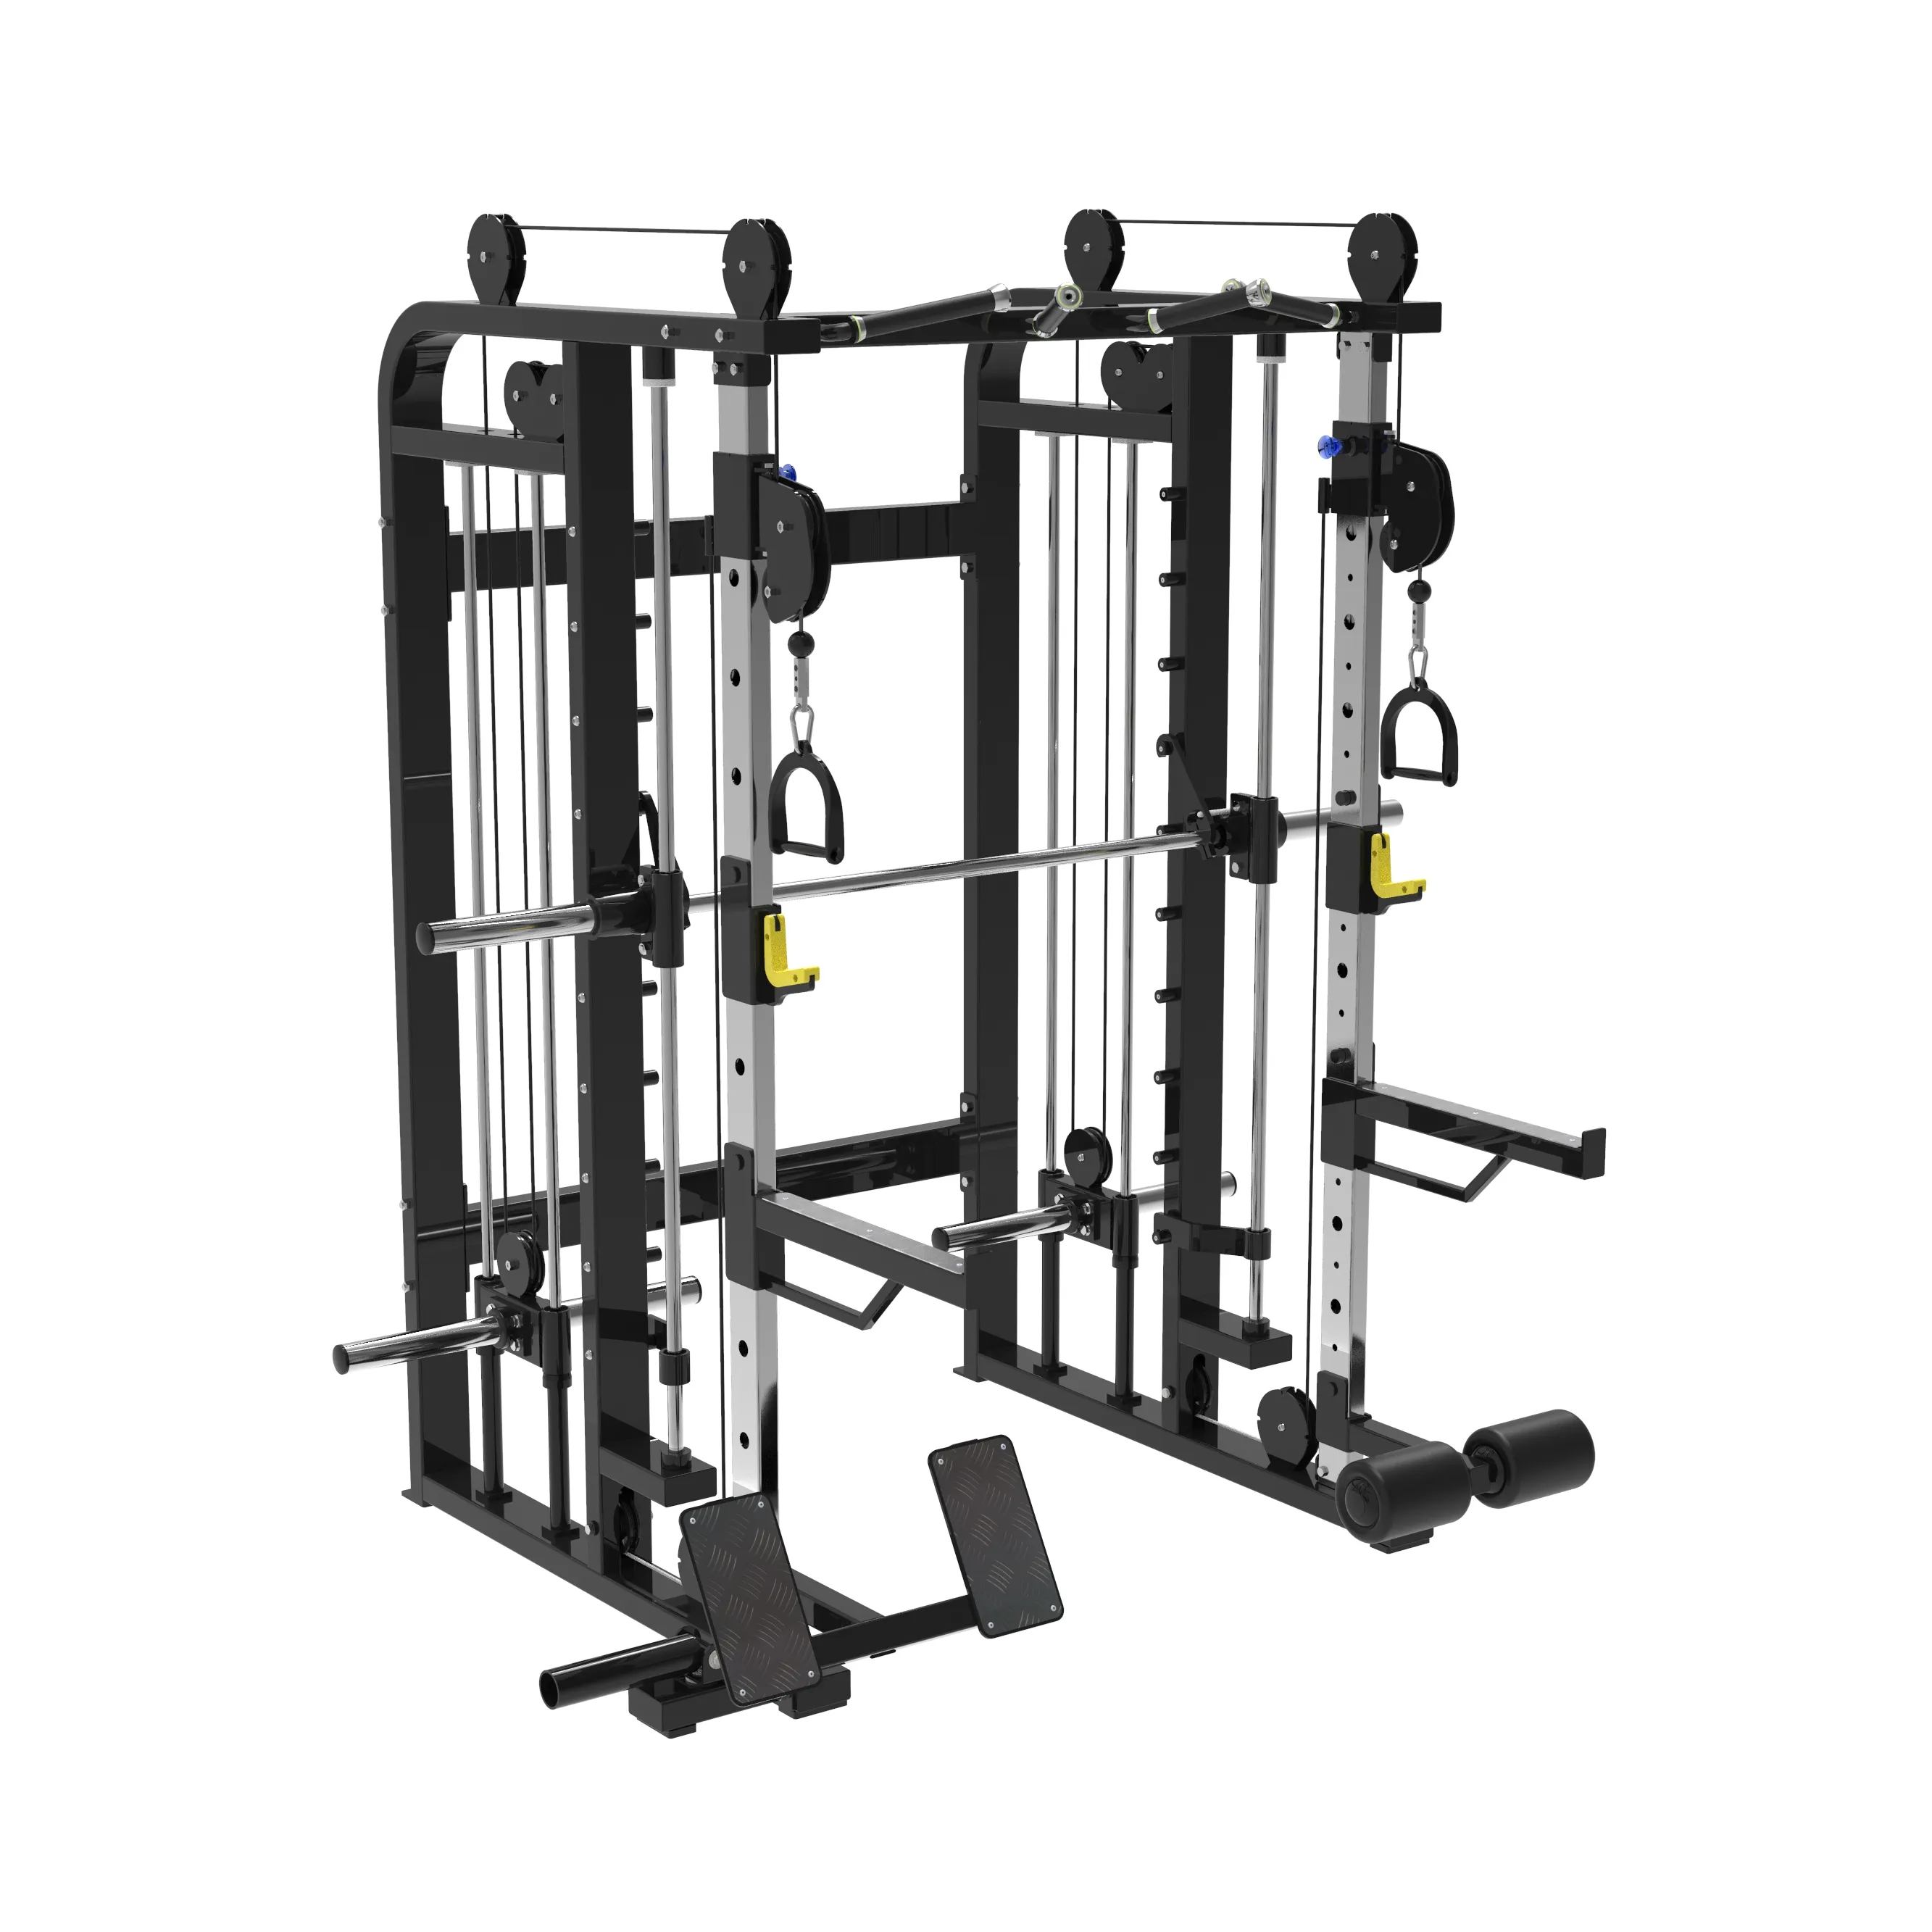 SK Home Use multifuncional equipamento de ginástica para treinamento versátil multiestação máquina de fitness